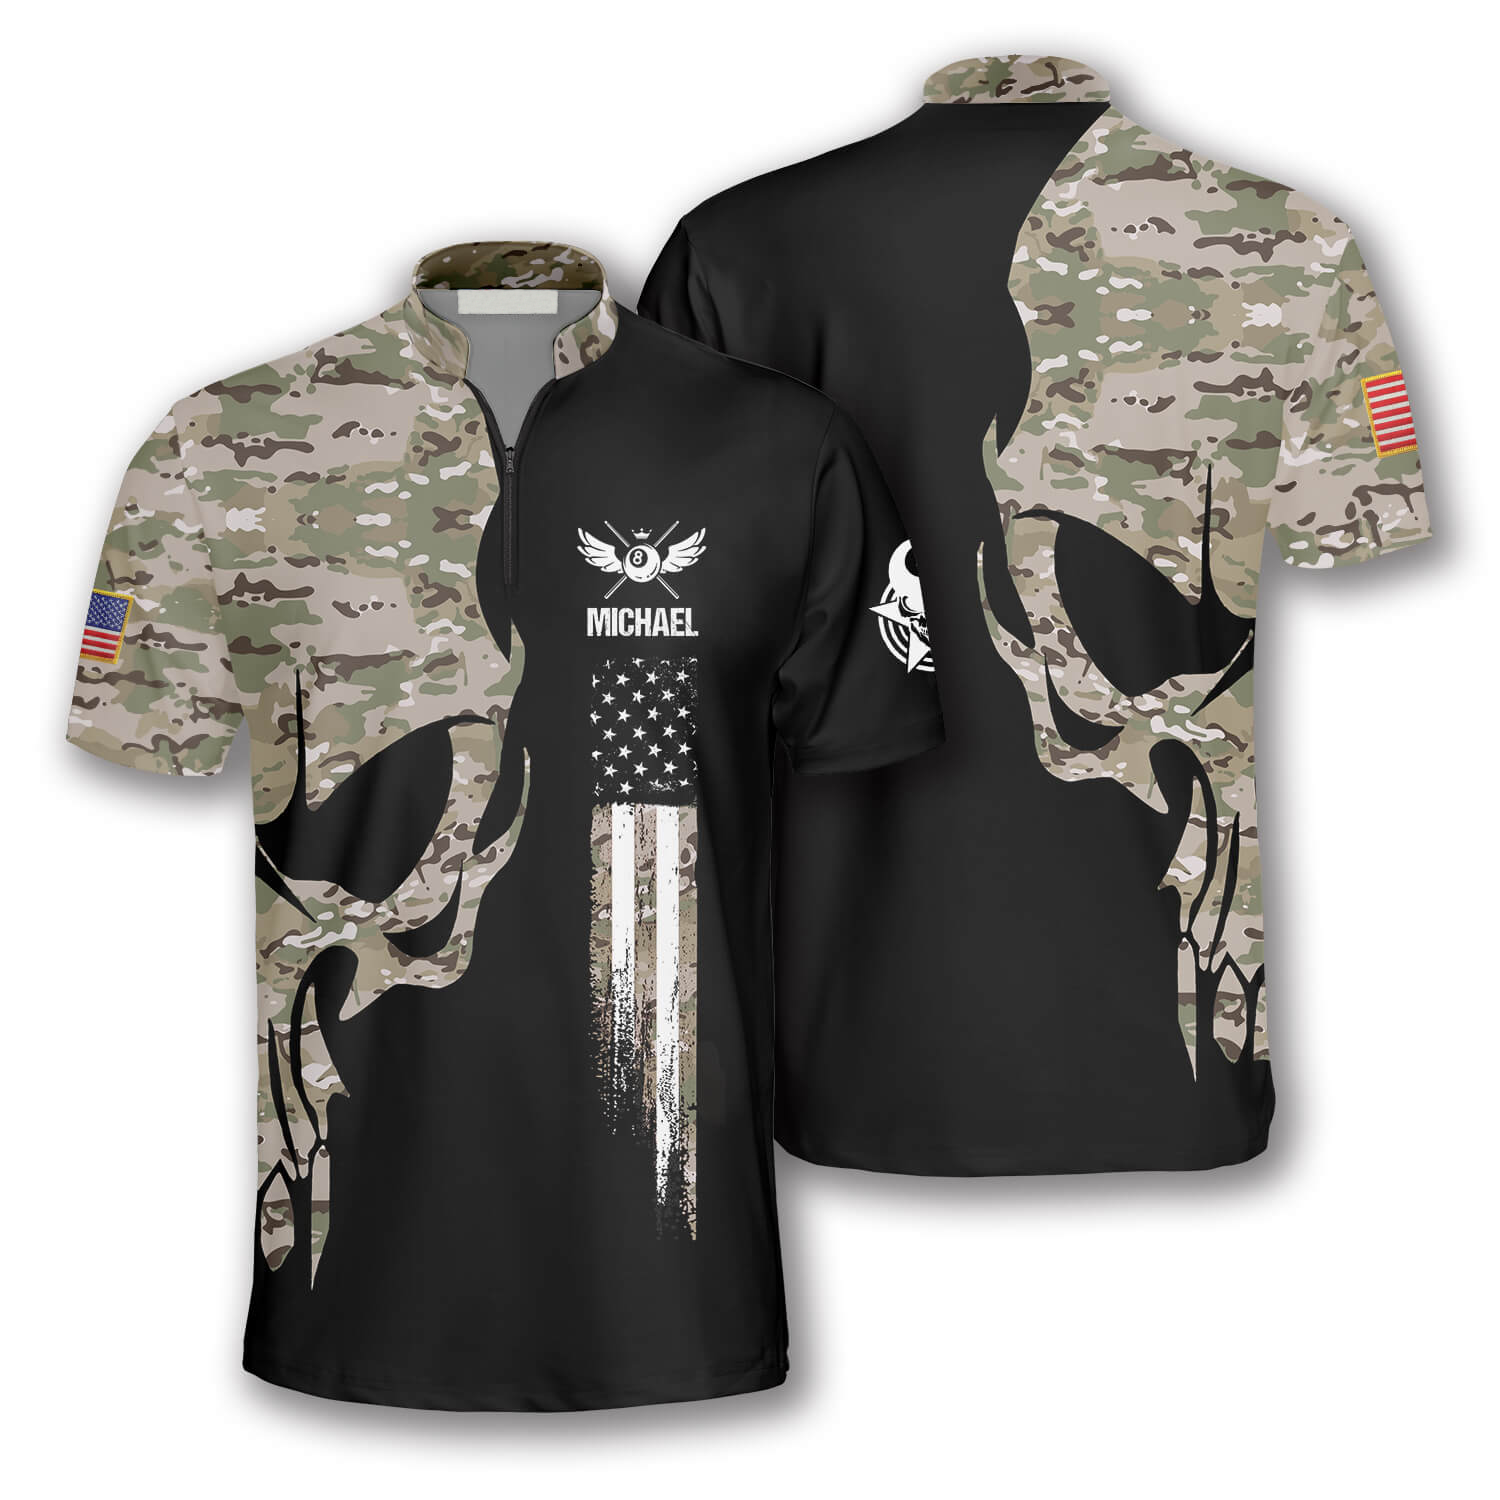 Skull Camouflage Custom Billiard Jerseys for Men/ Idea Gift for Billiard Player/ Skull Shirt